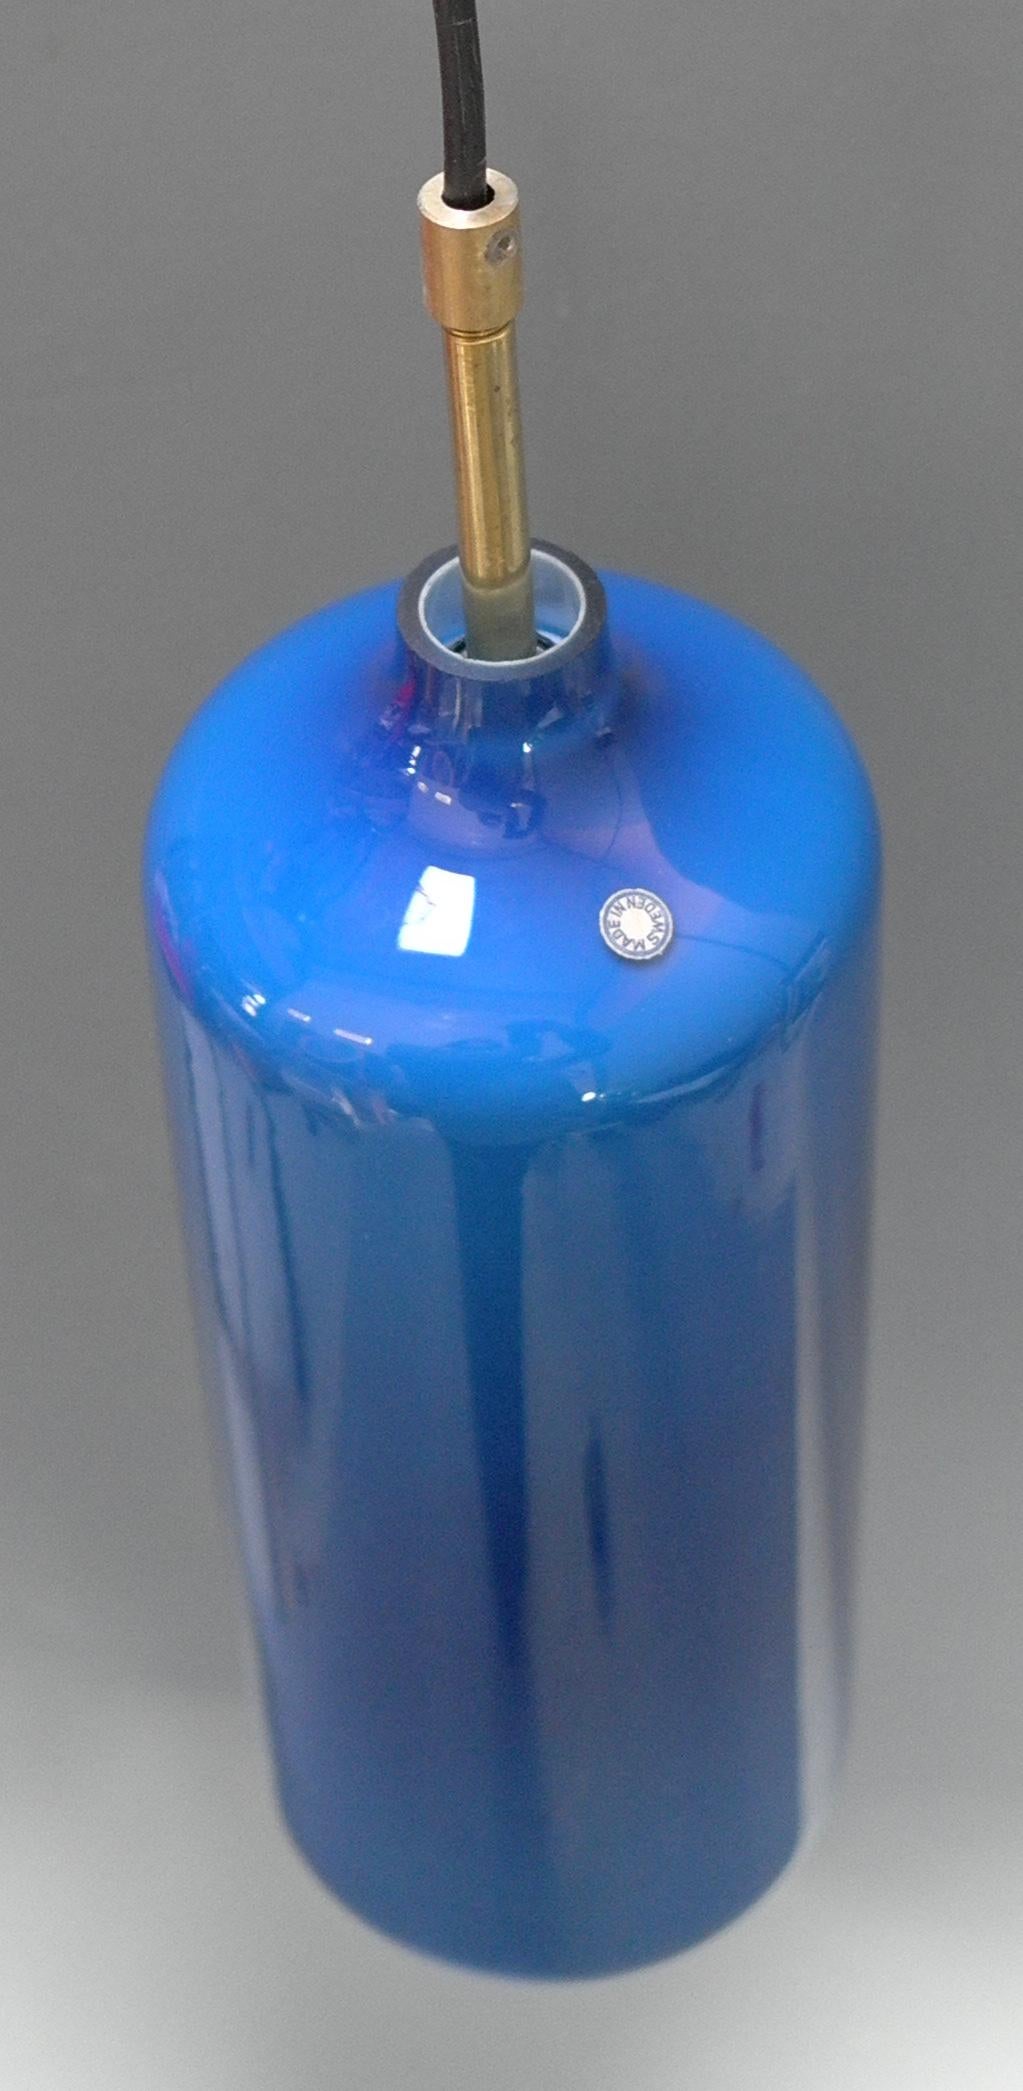 Lampes suspendues Cilinder en verre bleu Uno & Östen Kristiansson, Suède années 1960

Marqué d'un autocollant made in Sweden.

3 pièces en stock, demandez la disponibilité, NOS, lampes New old Stock. Le prix est fixé par pièce.